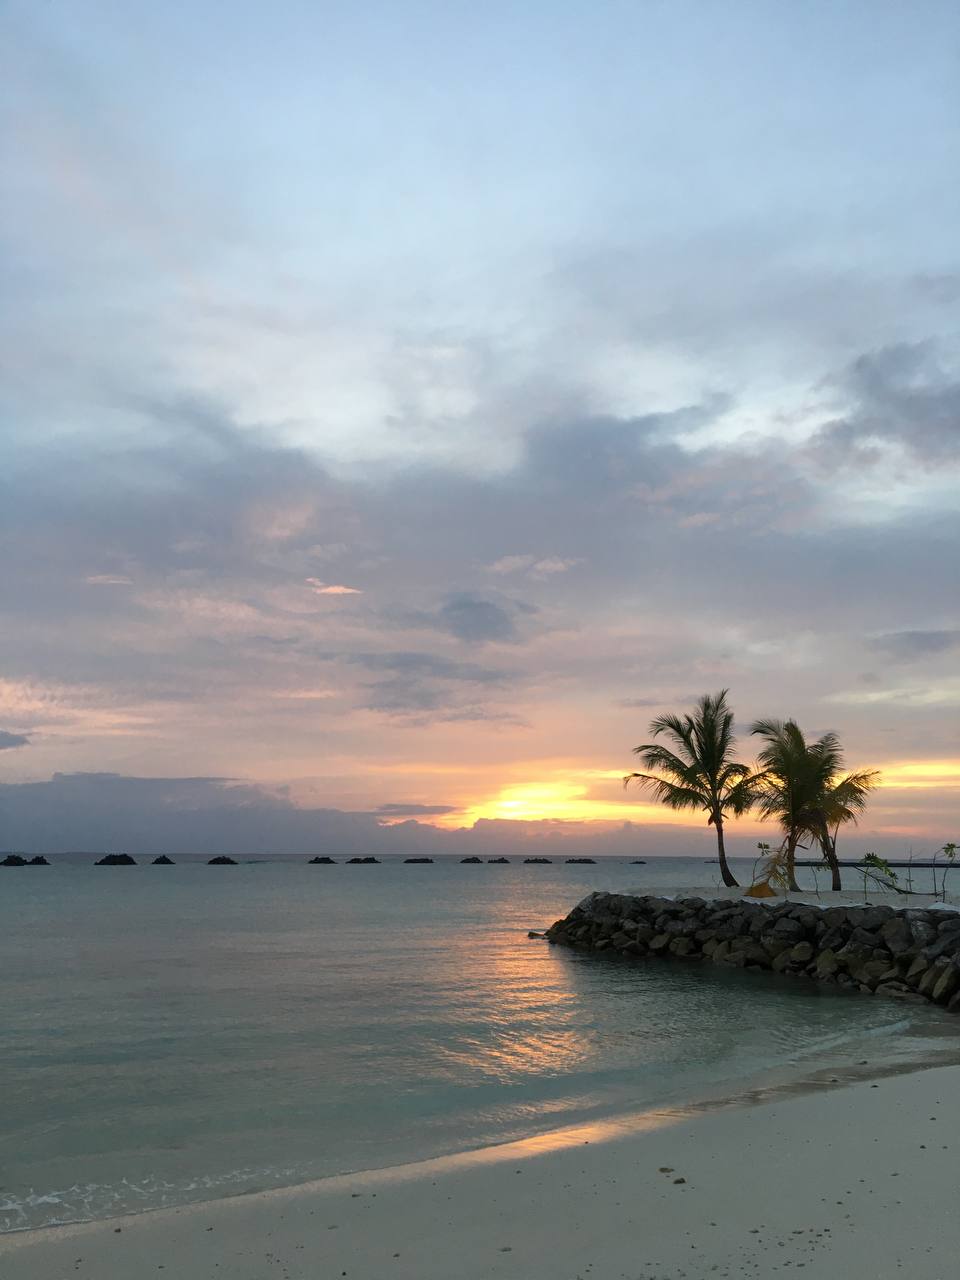 Солнце, море, белый песок и модная музыка каждый вечер. «Мечта», — скажете вы. А для владимирской художницы, дизайнера и модели Юлии Лейи все это стало рабочим местом. Неожиданно для самой себя она попала на Мальдивы в качестве диджея.